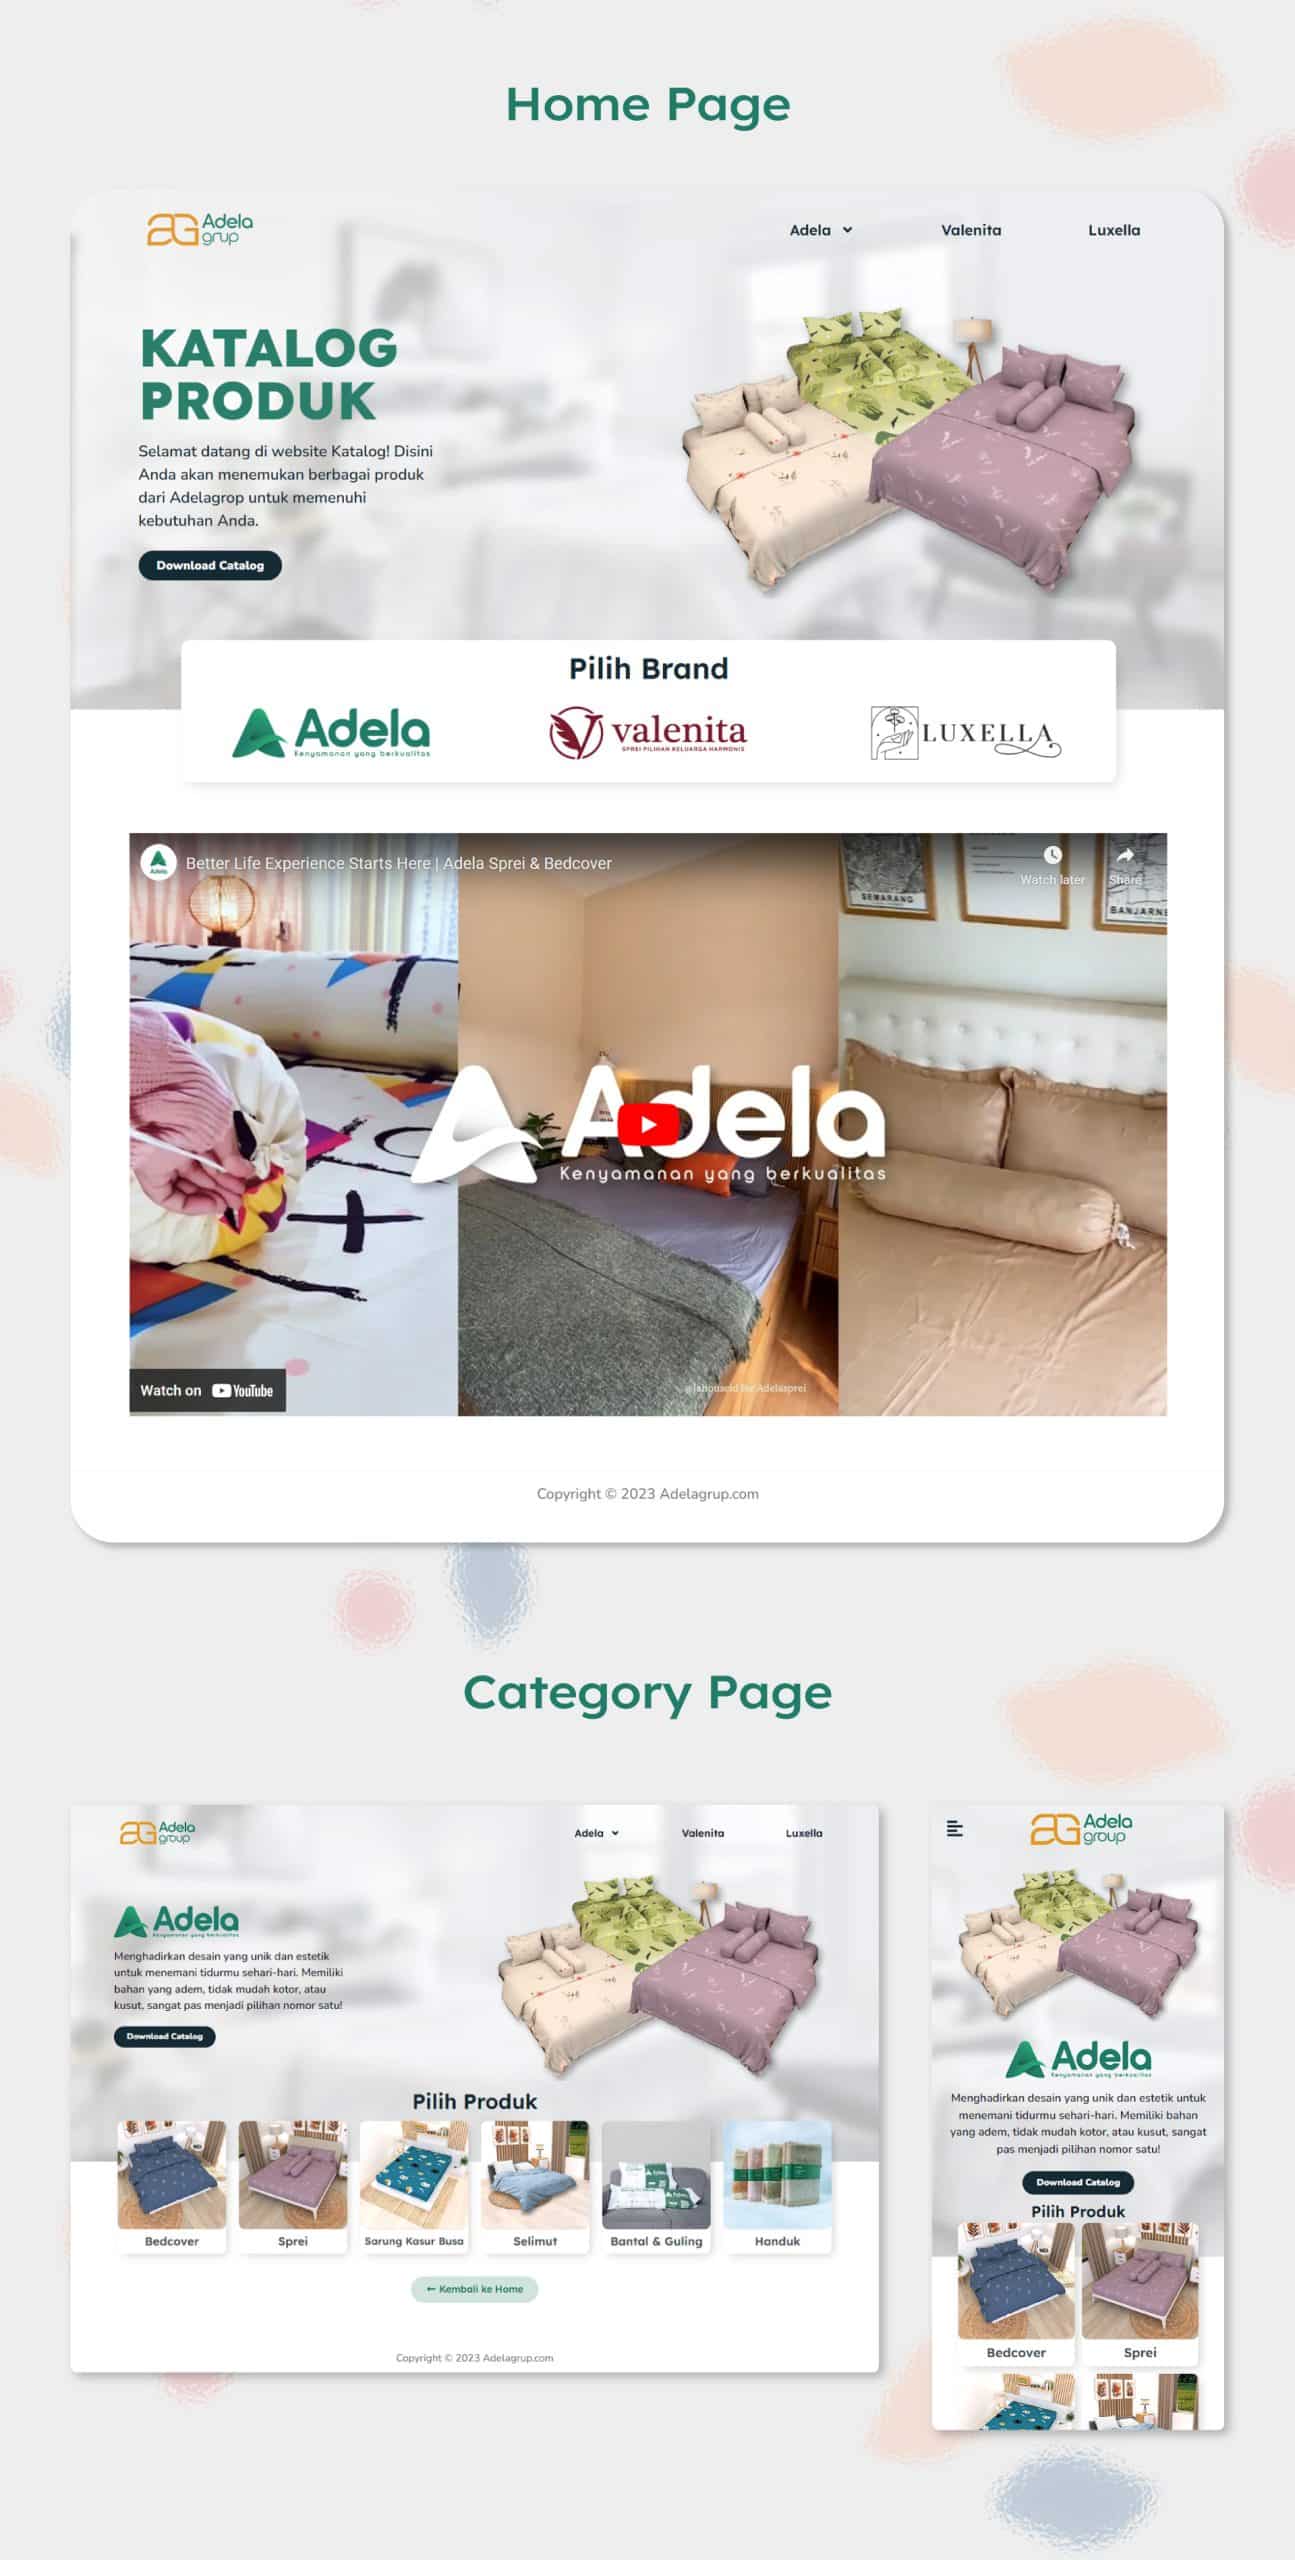 Adelagrup Website Katalog Design